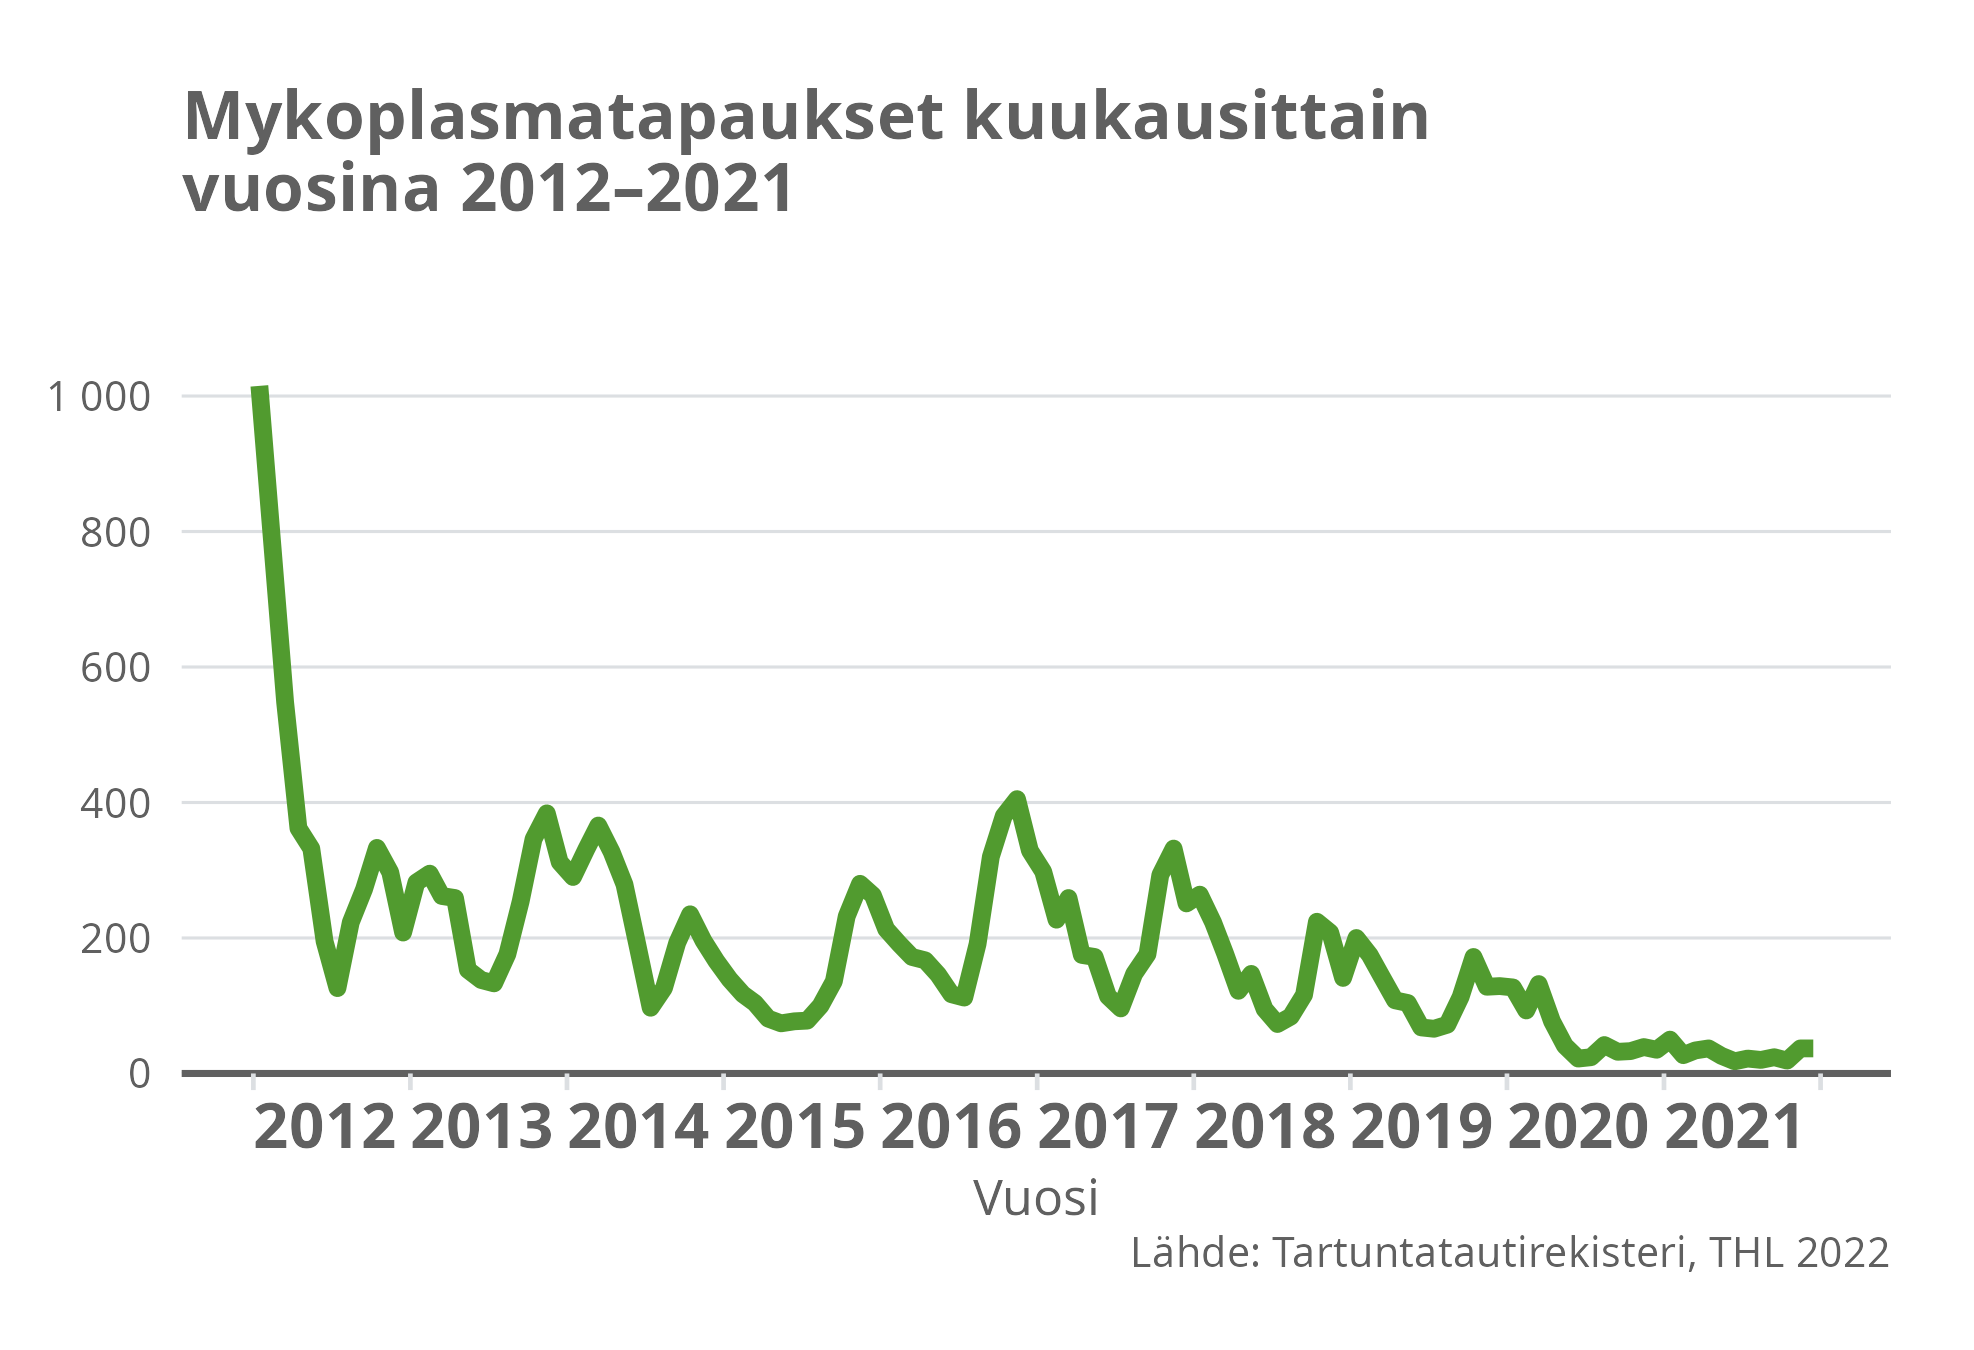 Mykoplasmatapaukset kuukausittain vuosina 2012-2021.